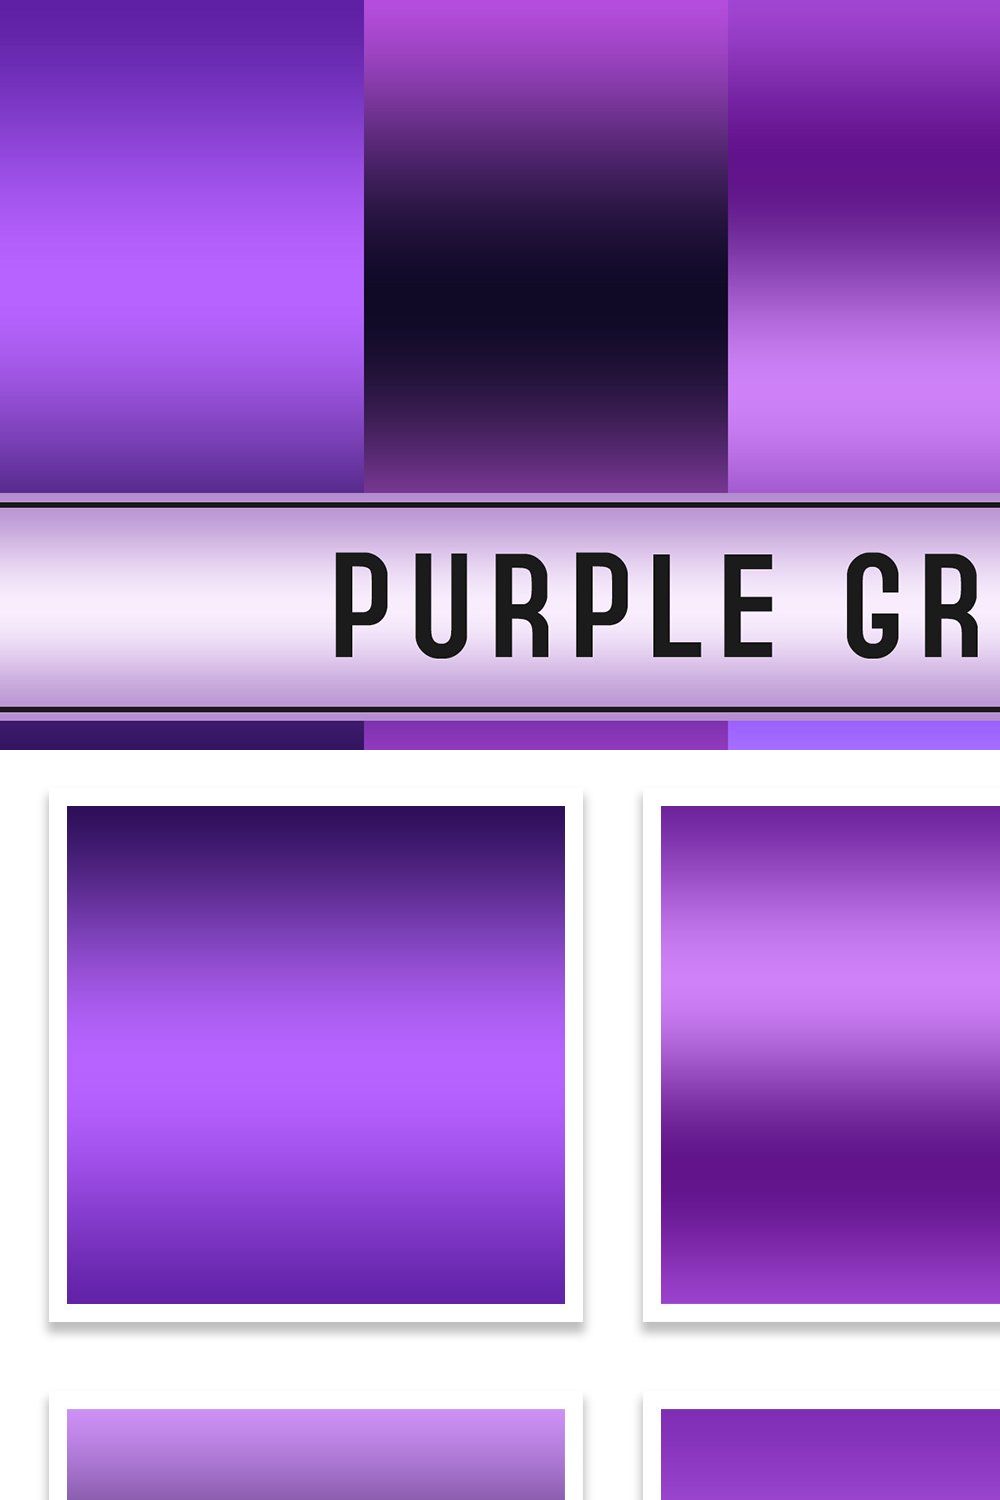 Purple Gradients pinterest preview image.